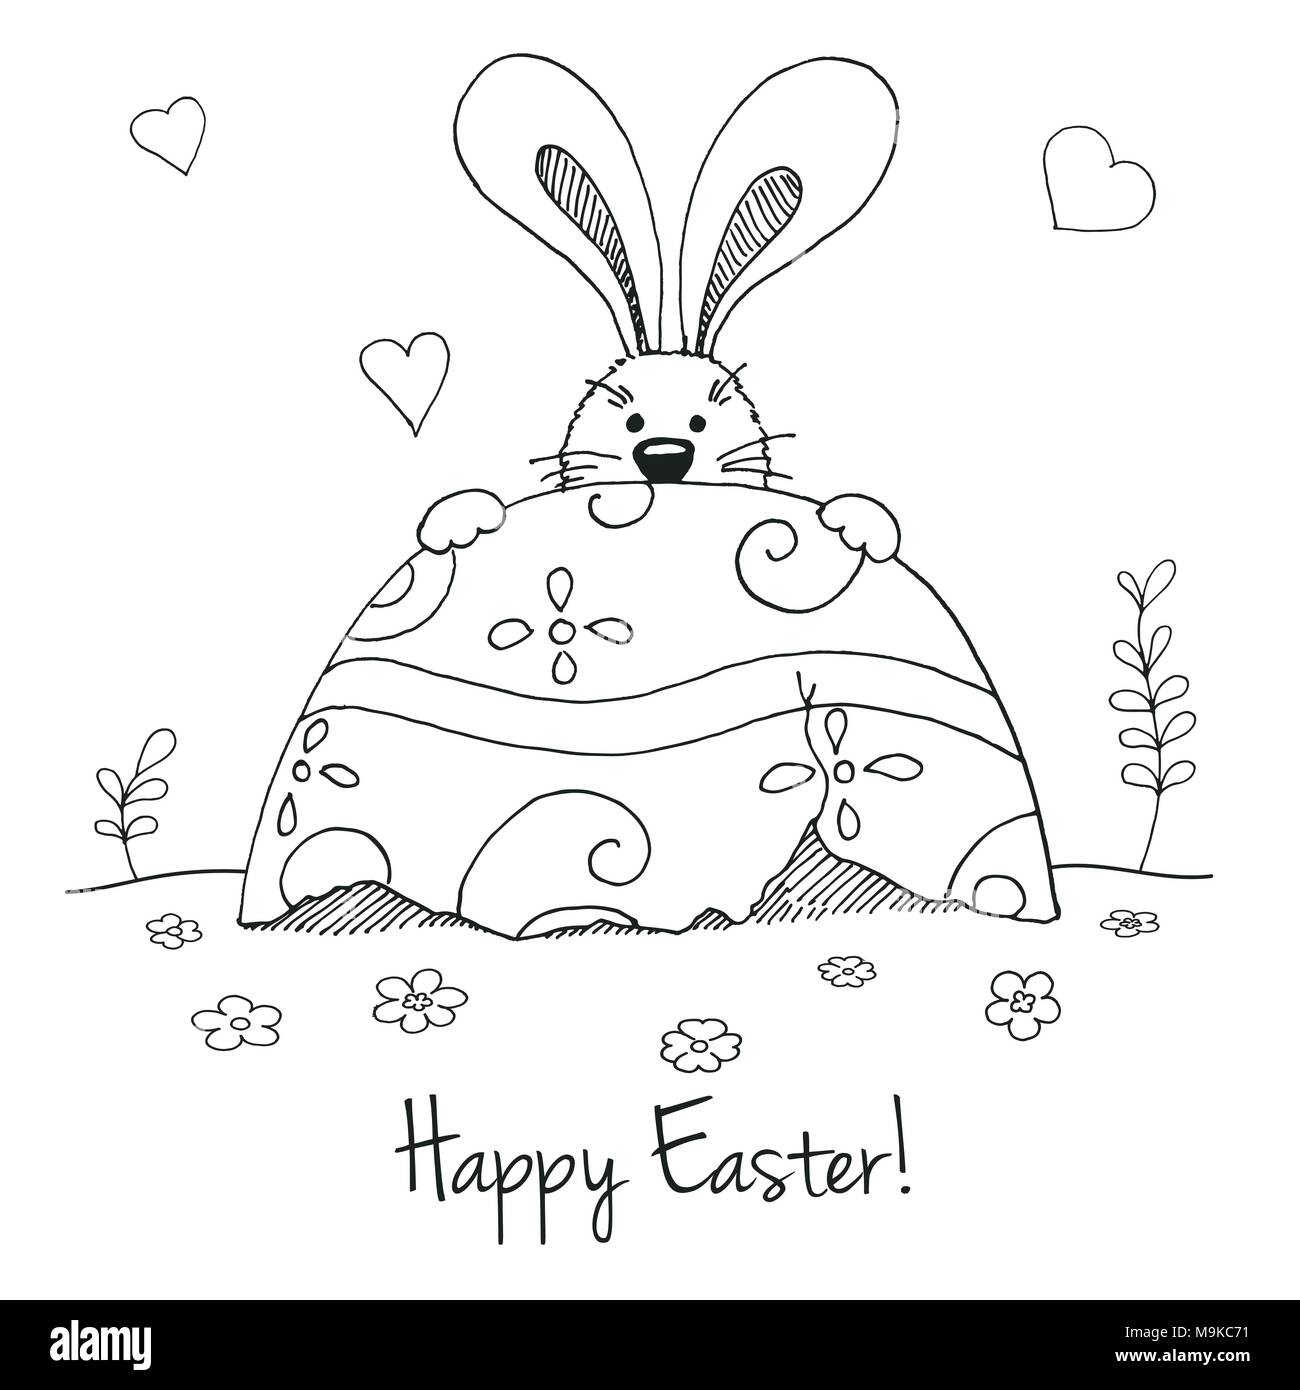 happy easter printable  Easter drawings Happy easter printable Easter  embroidery